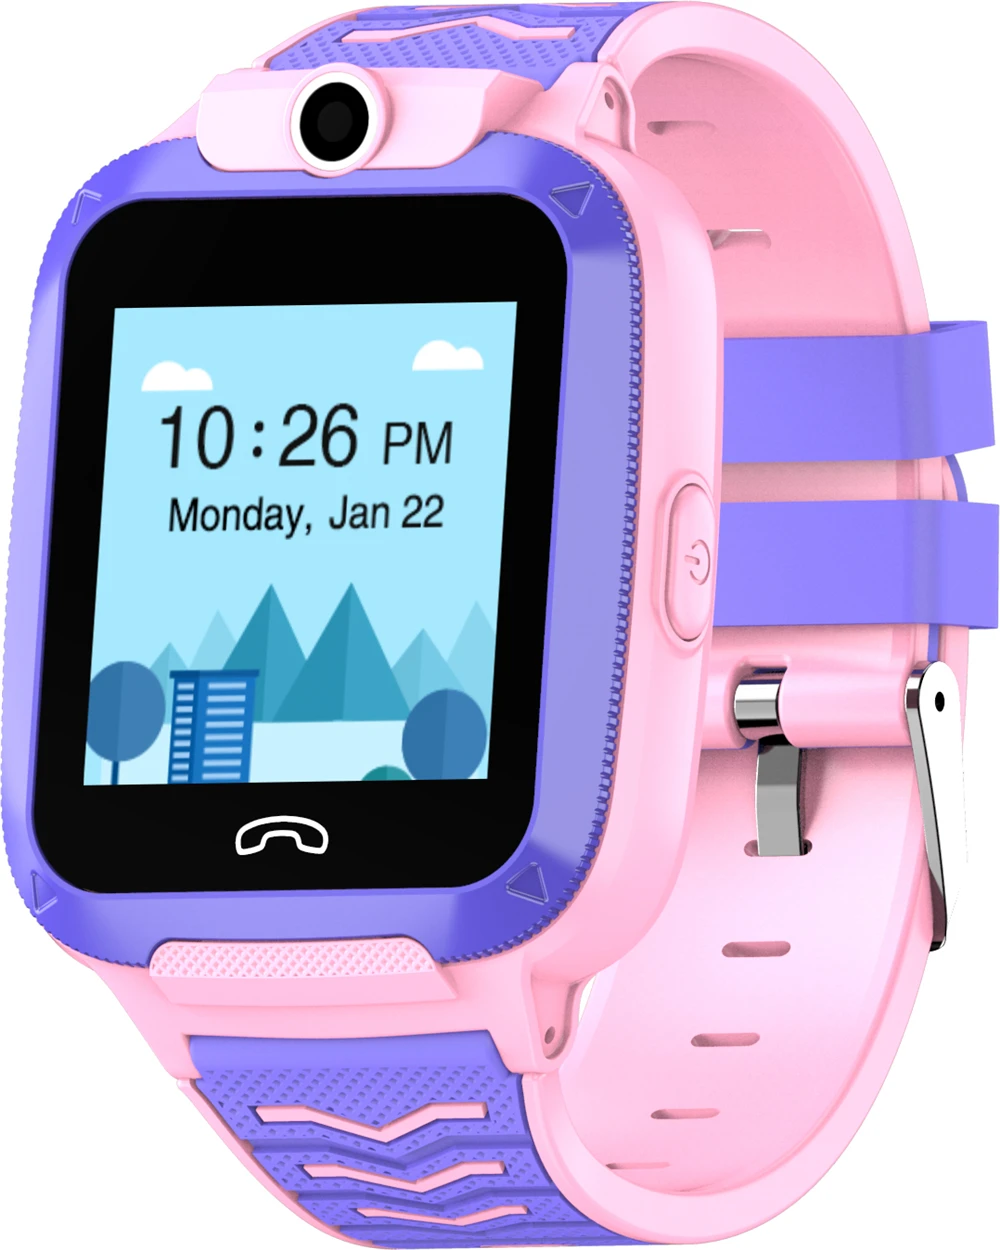 4G Детские умные часы 4g видео телефон часы gps Smartwatch SOS Вызов Smartwatch дети IP67 водонепроницаемые детские часы время gps трекер